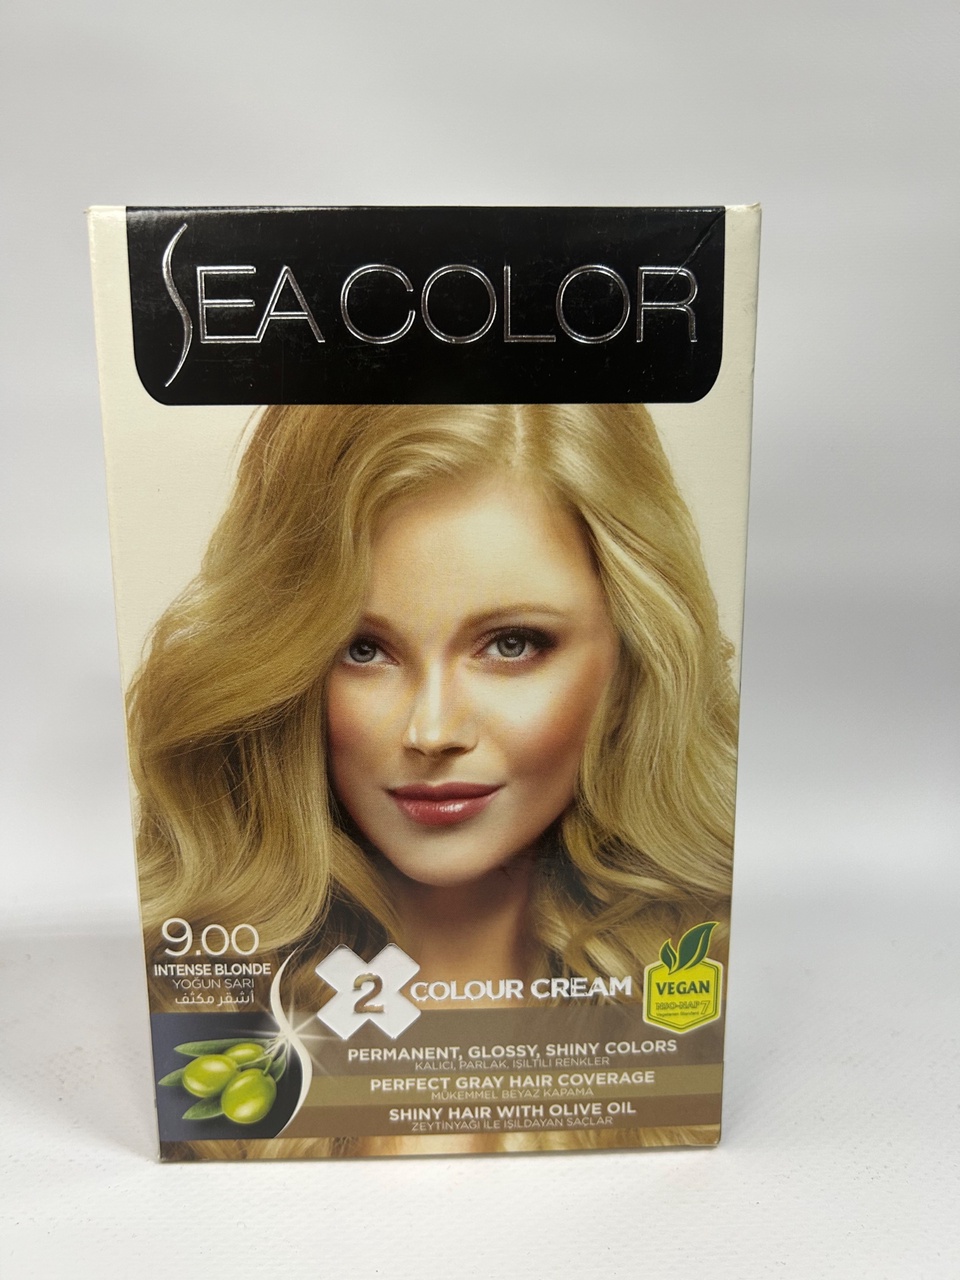 Sea Color 9.00 Краска д/волос «Интенсивный блондин» - 300 ₽, заказать онлайн.